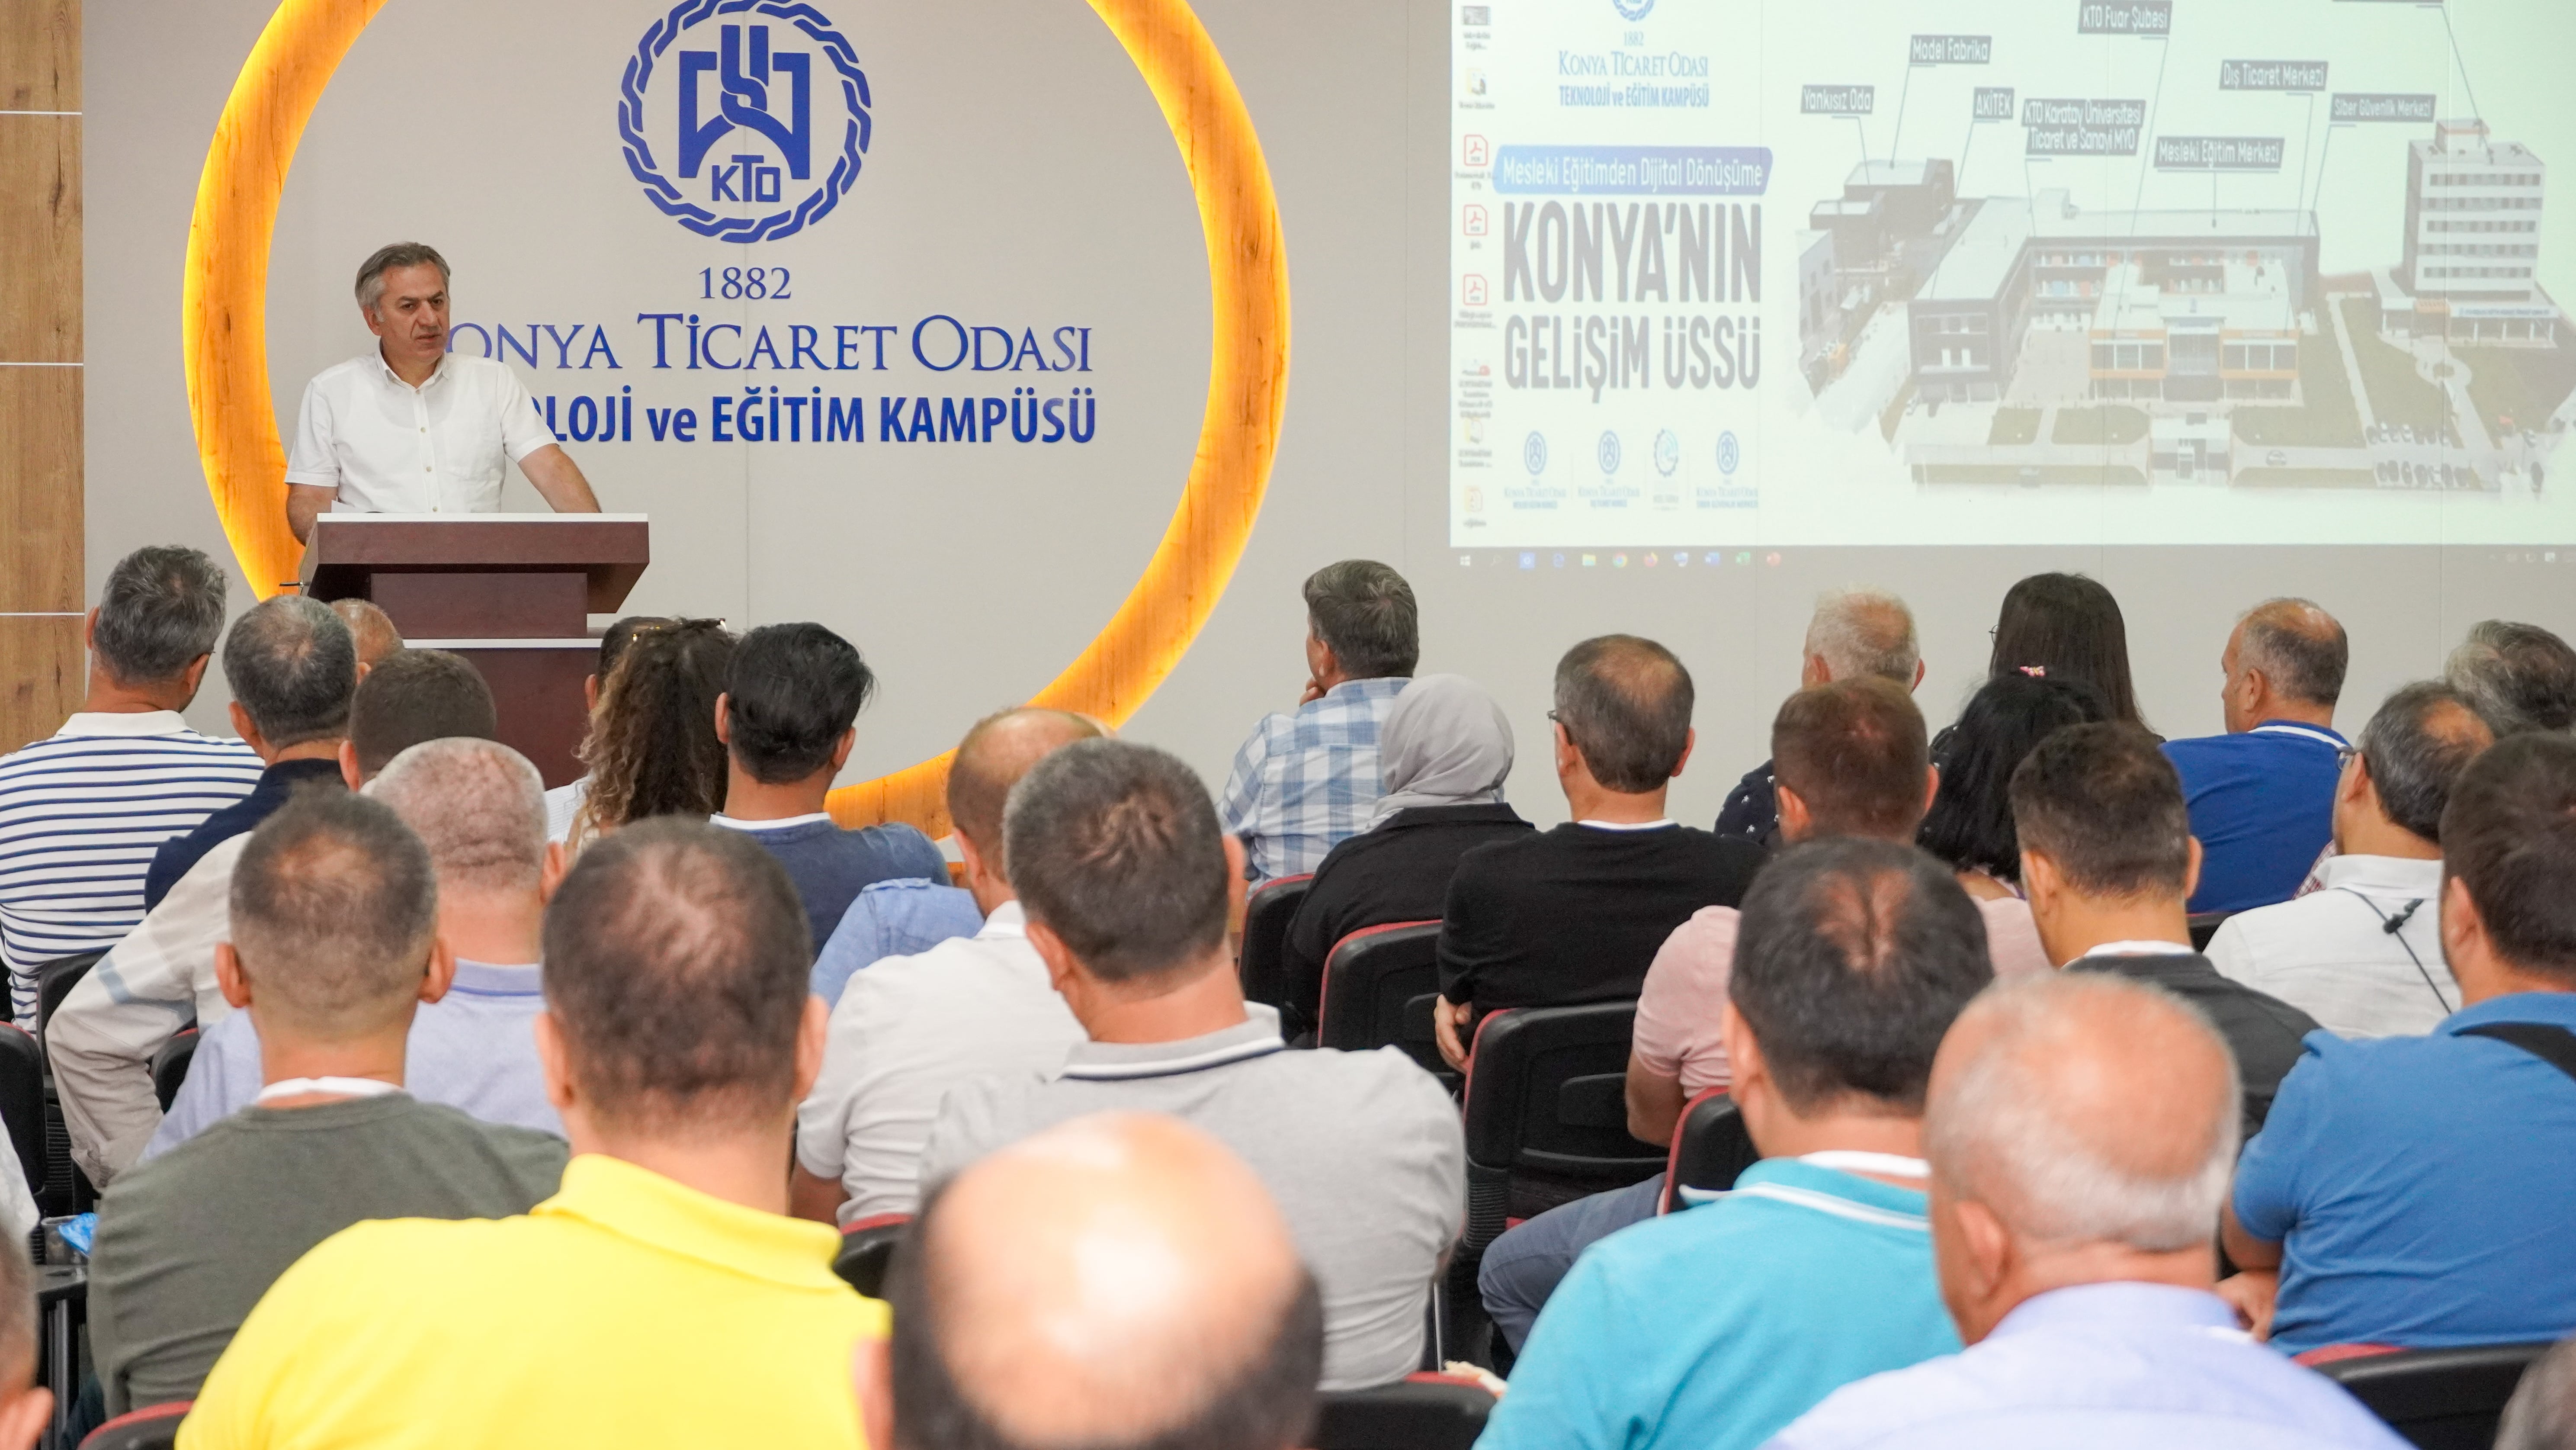 Türkiye Genelinden 90 Meslek Lisesi Öğretmeni KTO Mesleki Eğitim Merkezi'nde Eğitimlerine Başladı.